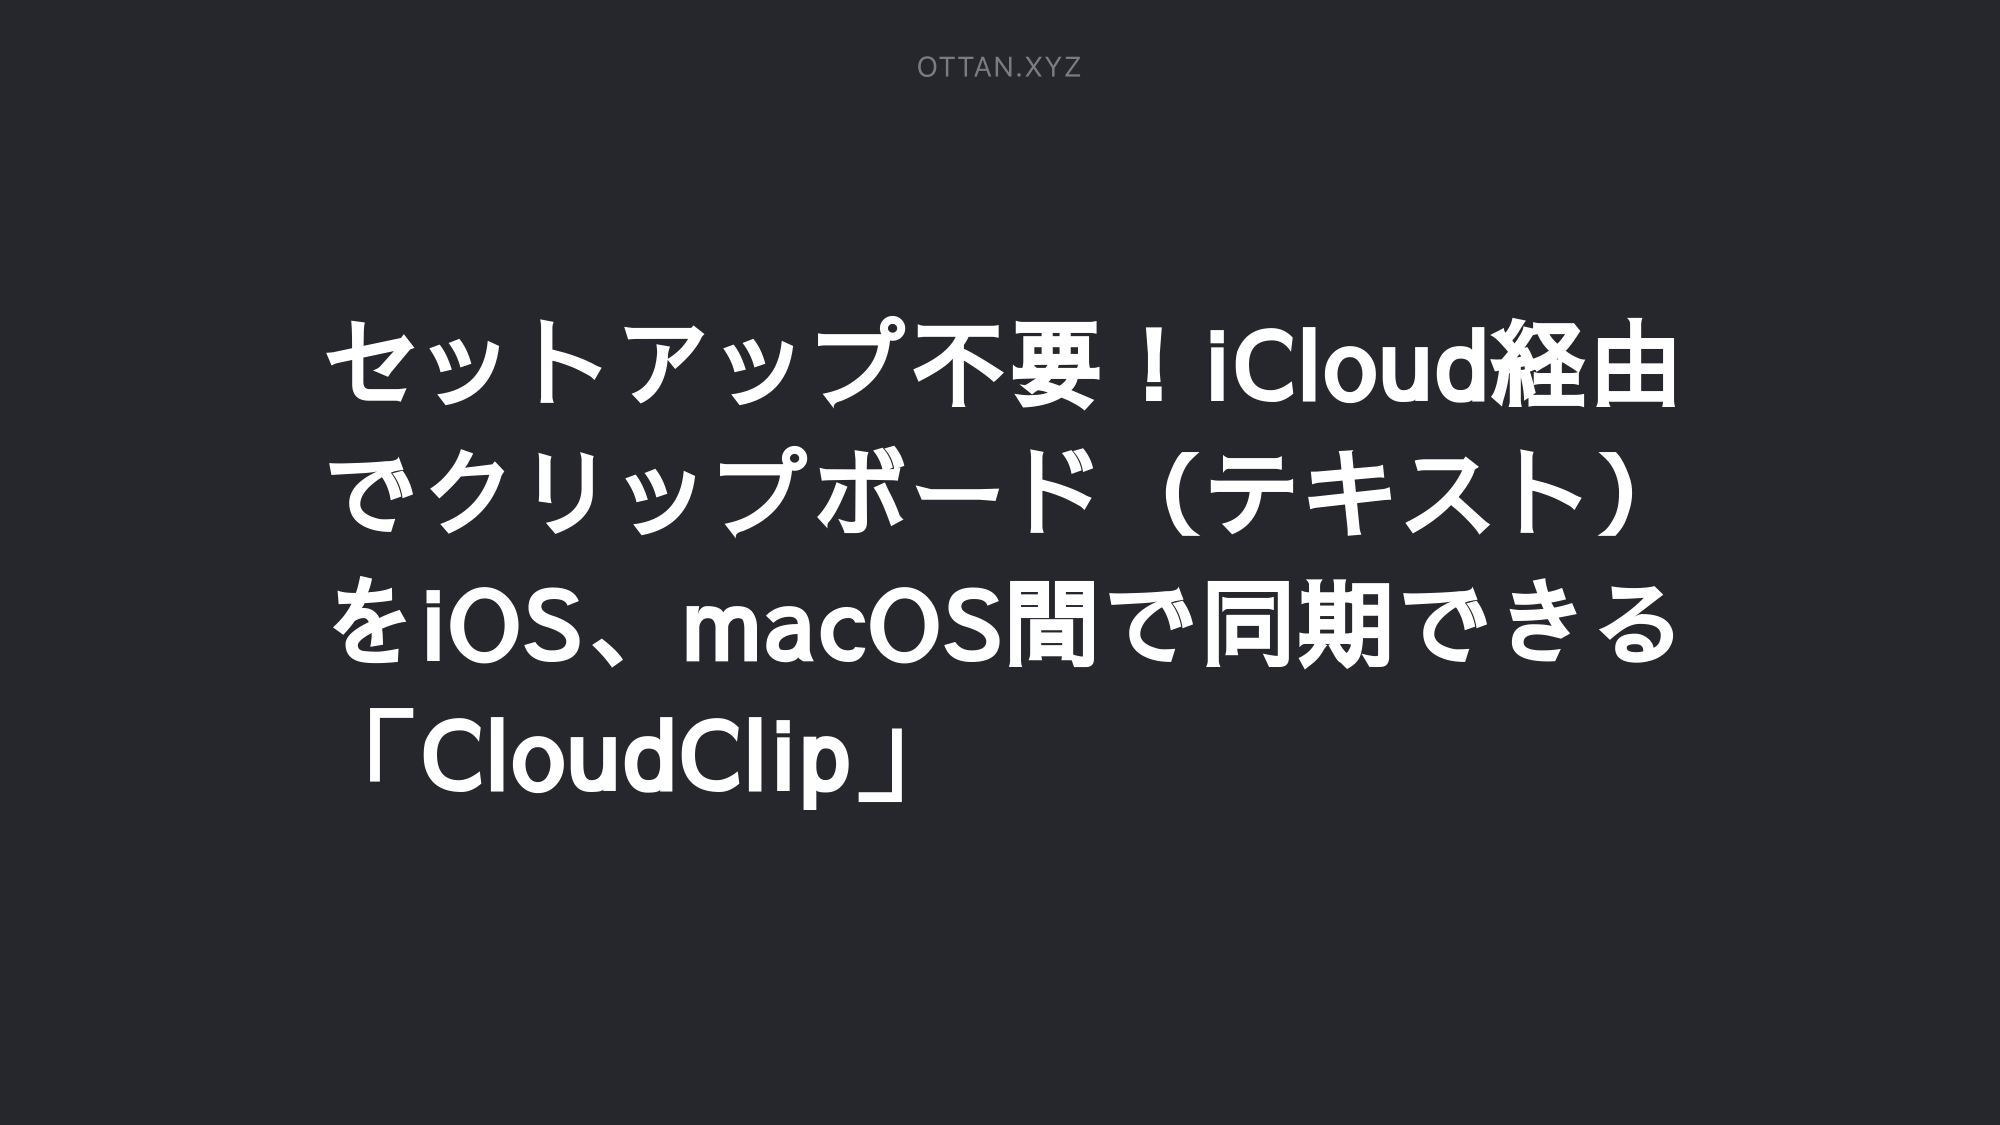 セットアップ不要 Icloud経由でクリップボード テキスト をios Macos間で同期できる Cloudclip Ottanxyz